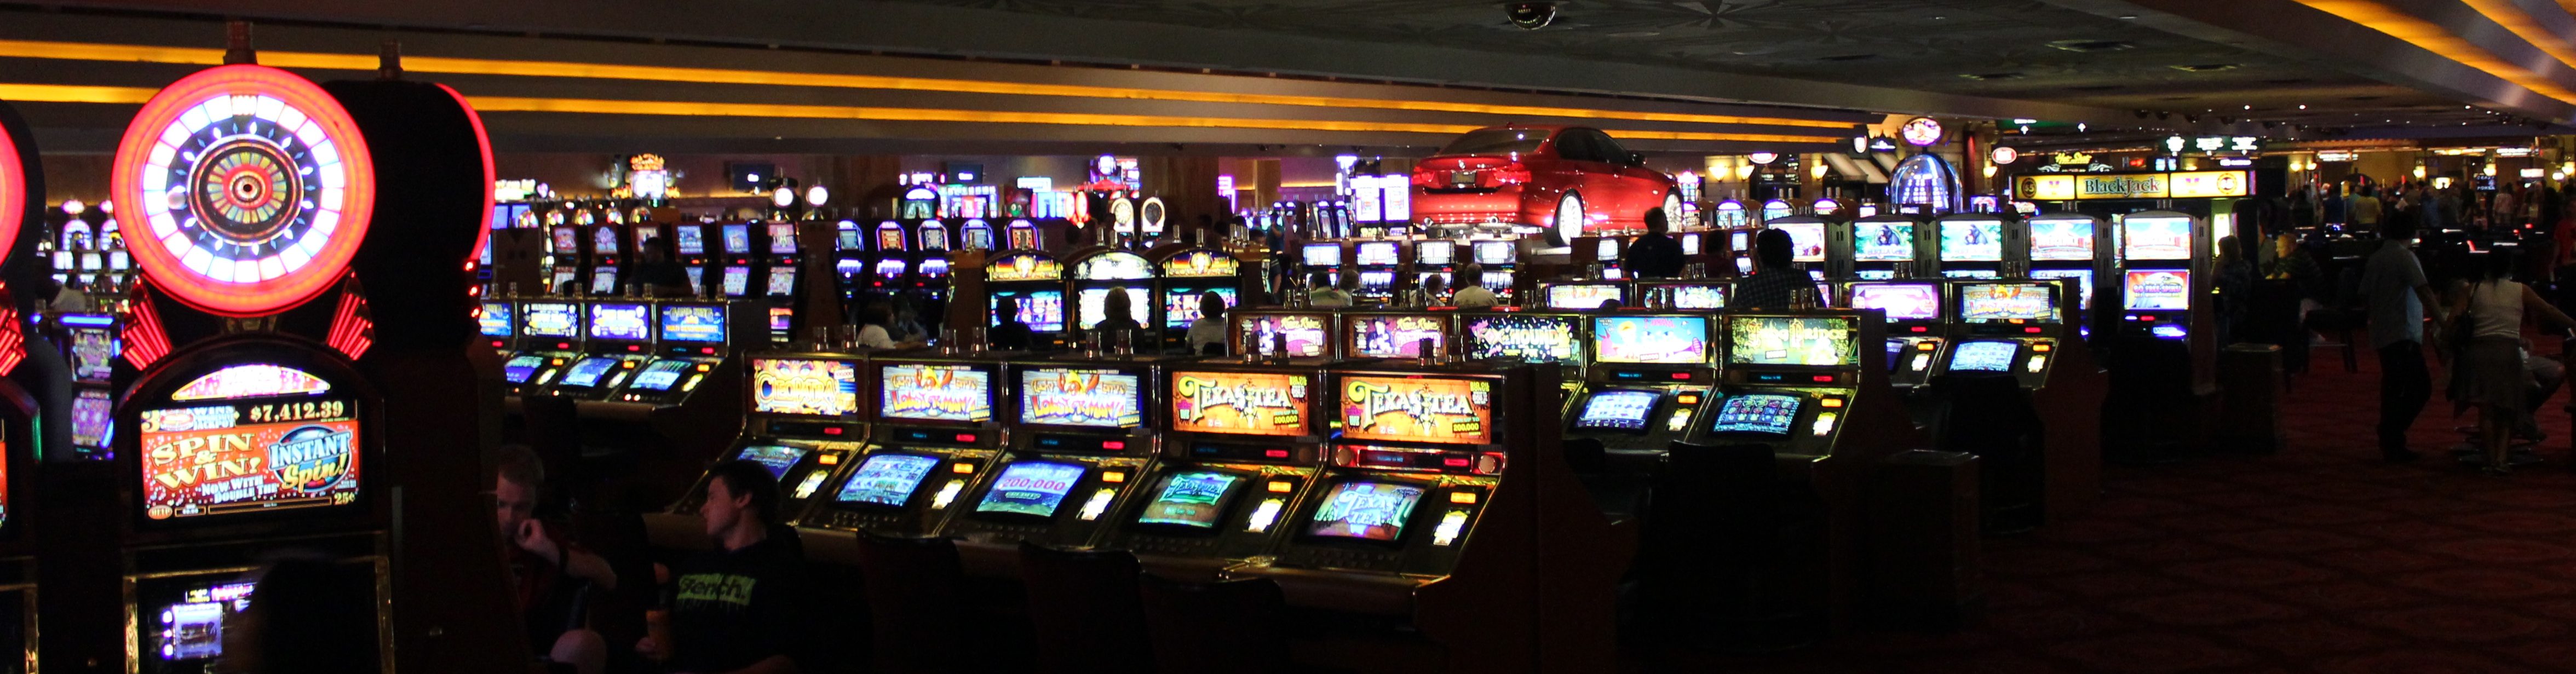 Casino Floor, Slot Machines, Spielautomaten, Gambling,